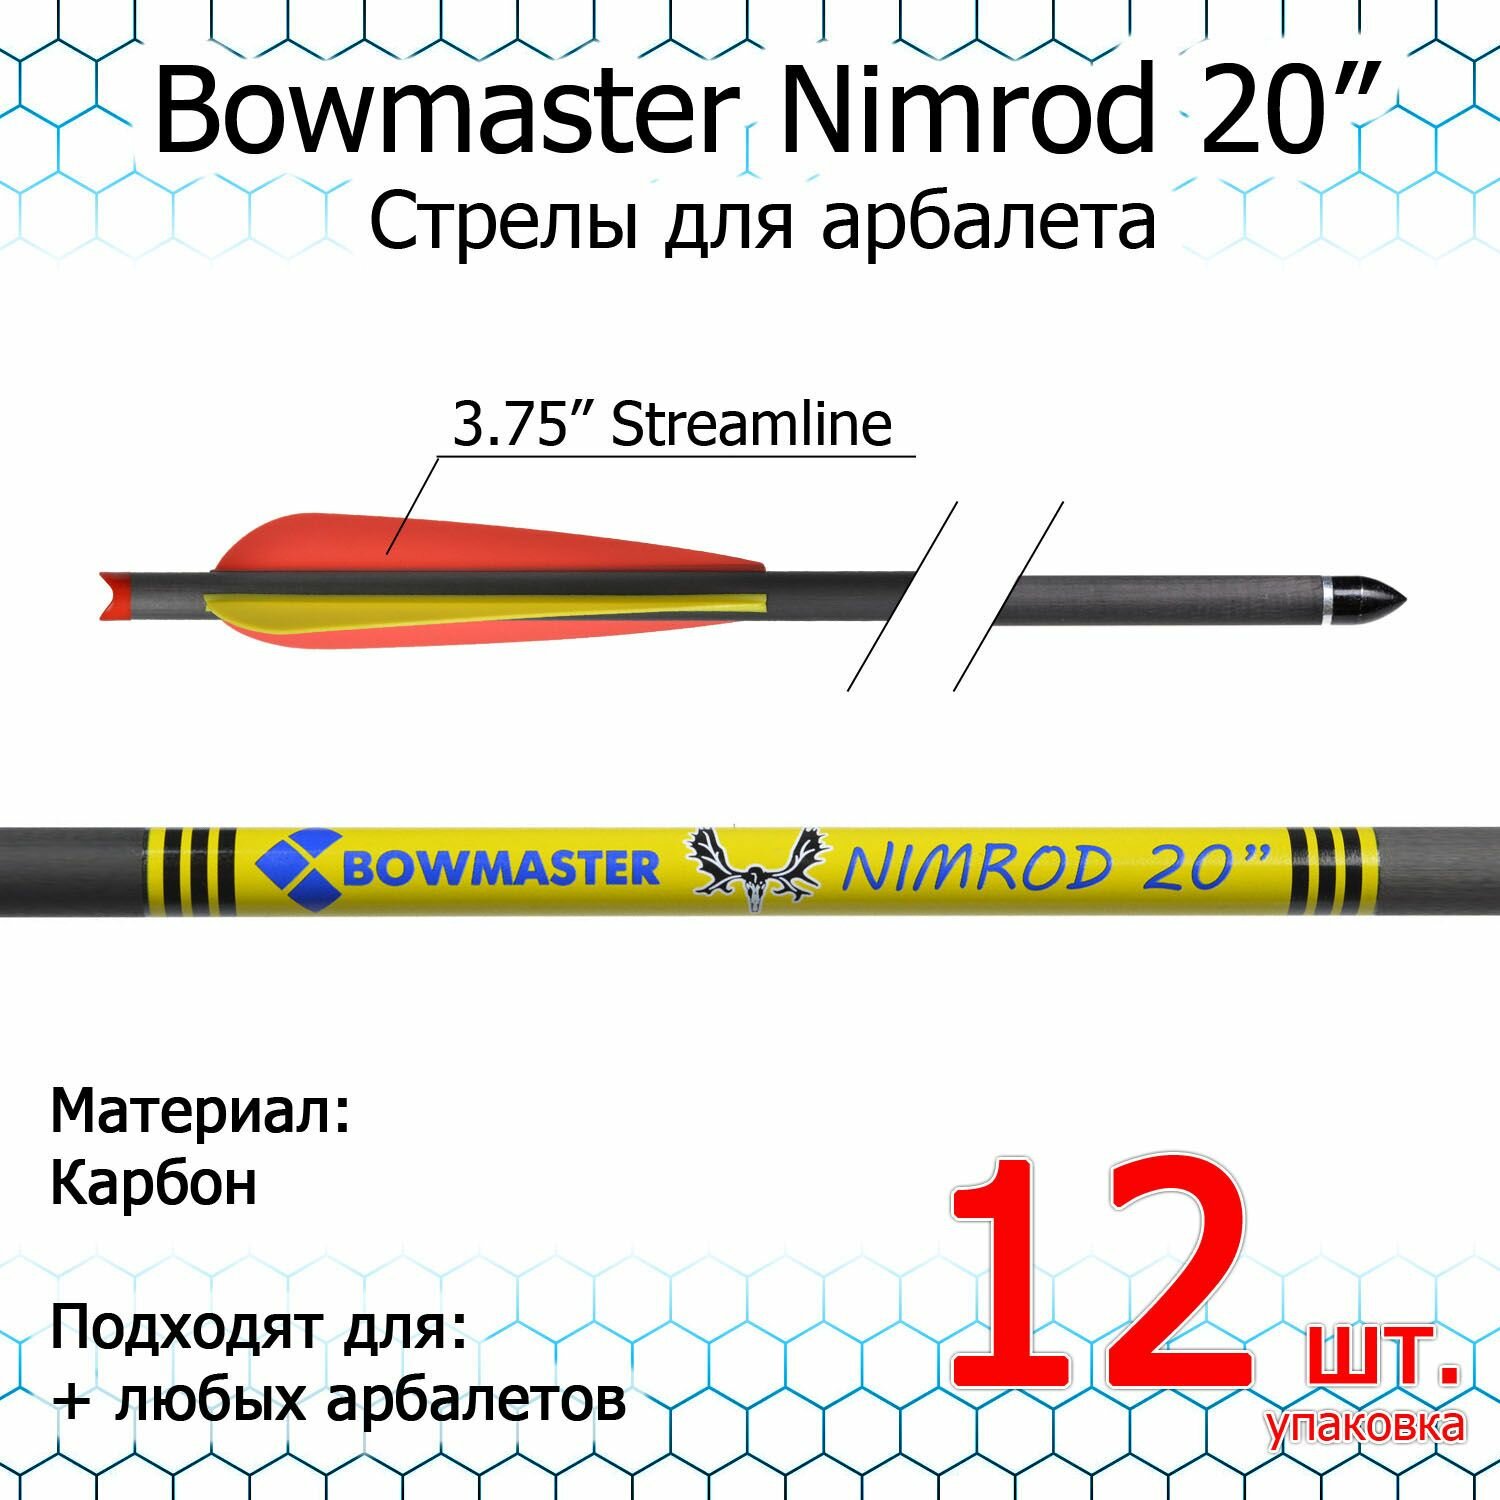 Стрела для арбалета Bowmaster - Nimrod 20 дюймов карбоновая 11/32 оперение 3.75" Streamline (12 шт.)